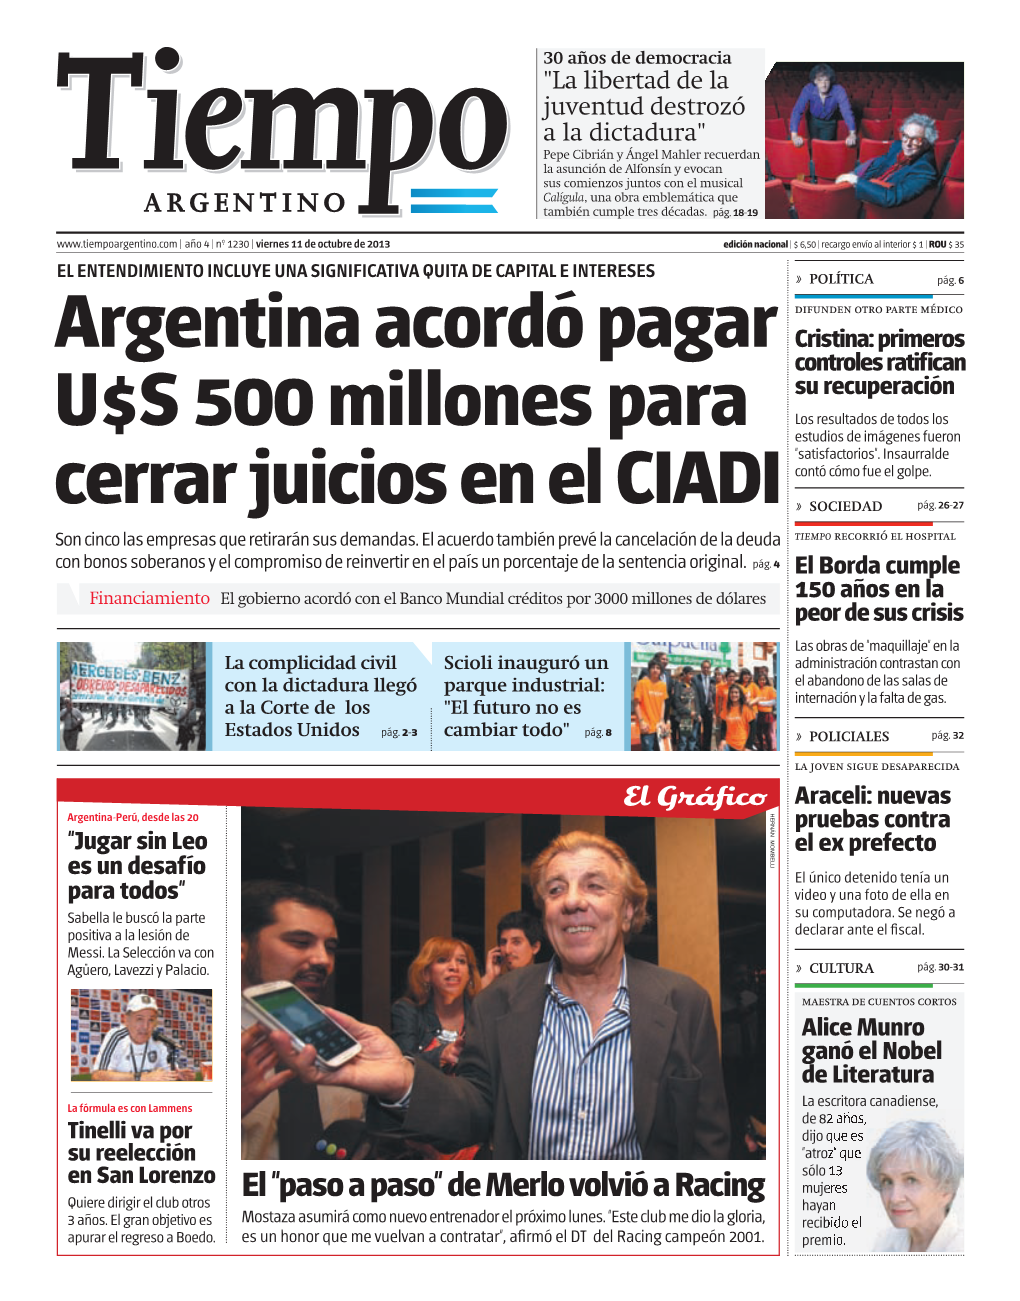 Argentina Acordó Pagar U$S 500 Millones Para Cerrar Juicios En El